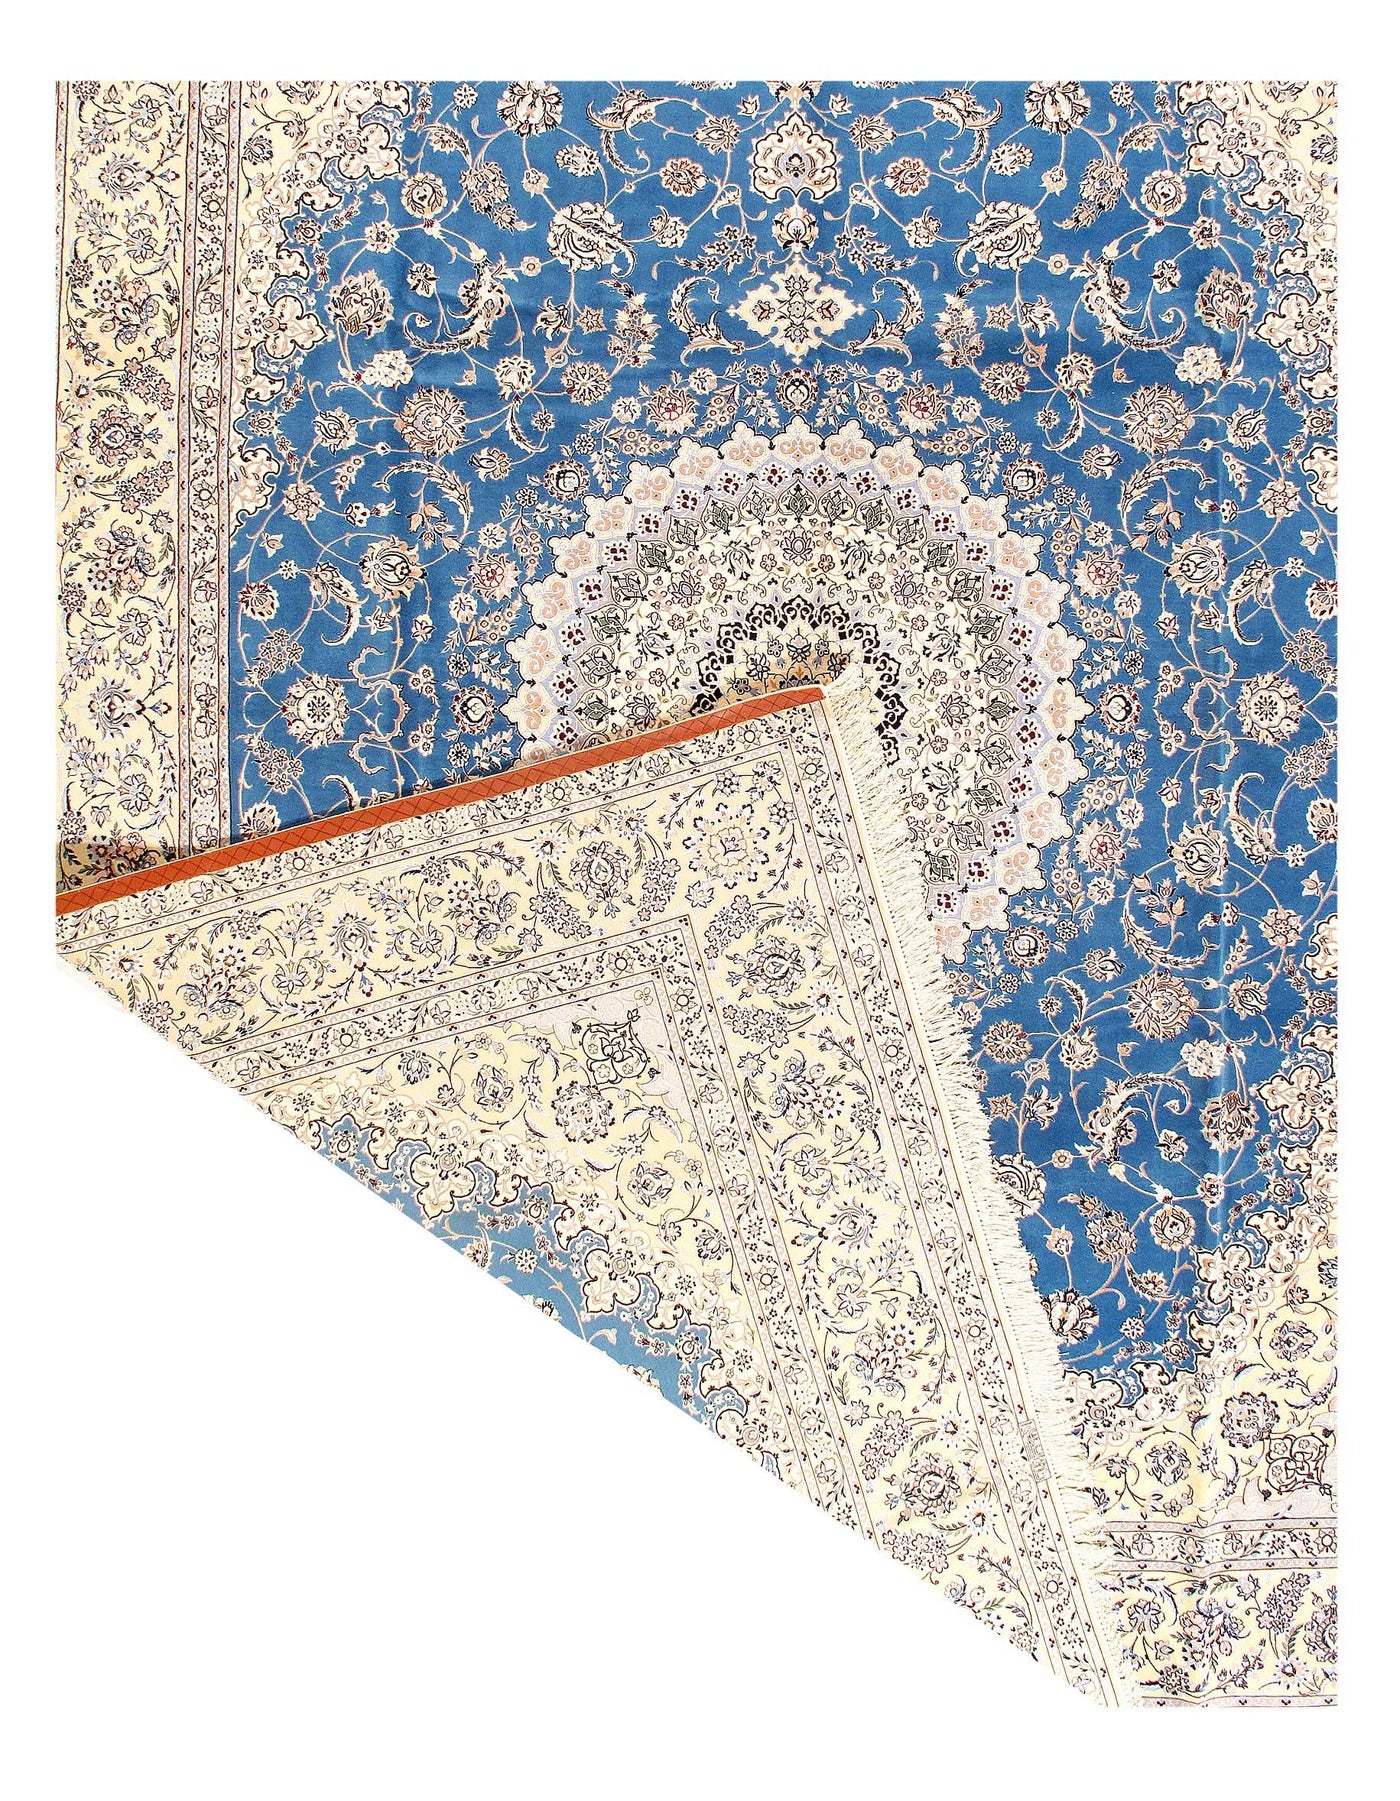 Canvello Nain Silk & Wool Blue Persian Rug - 10'2" x 13'3"